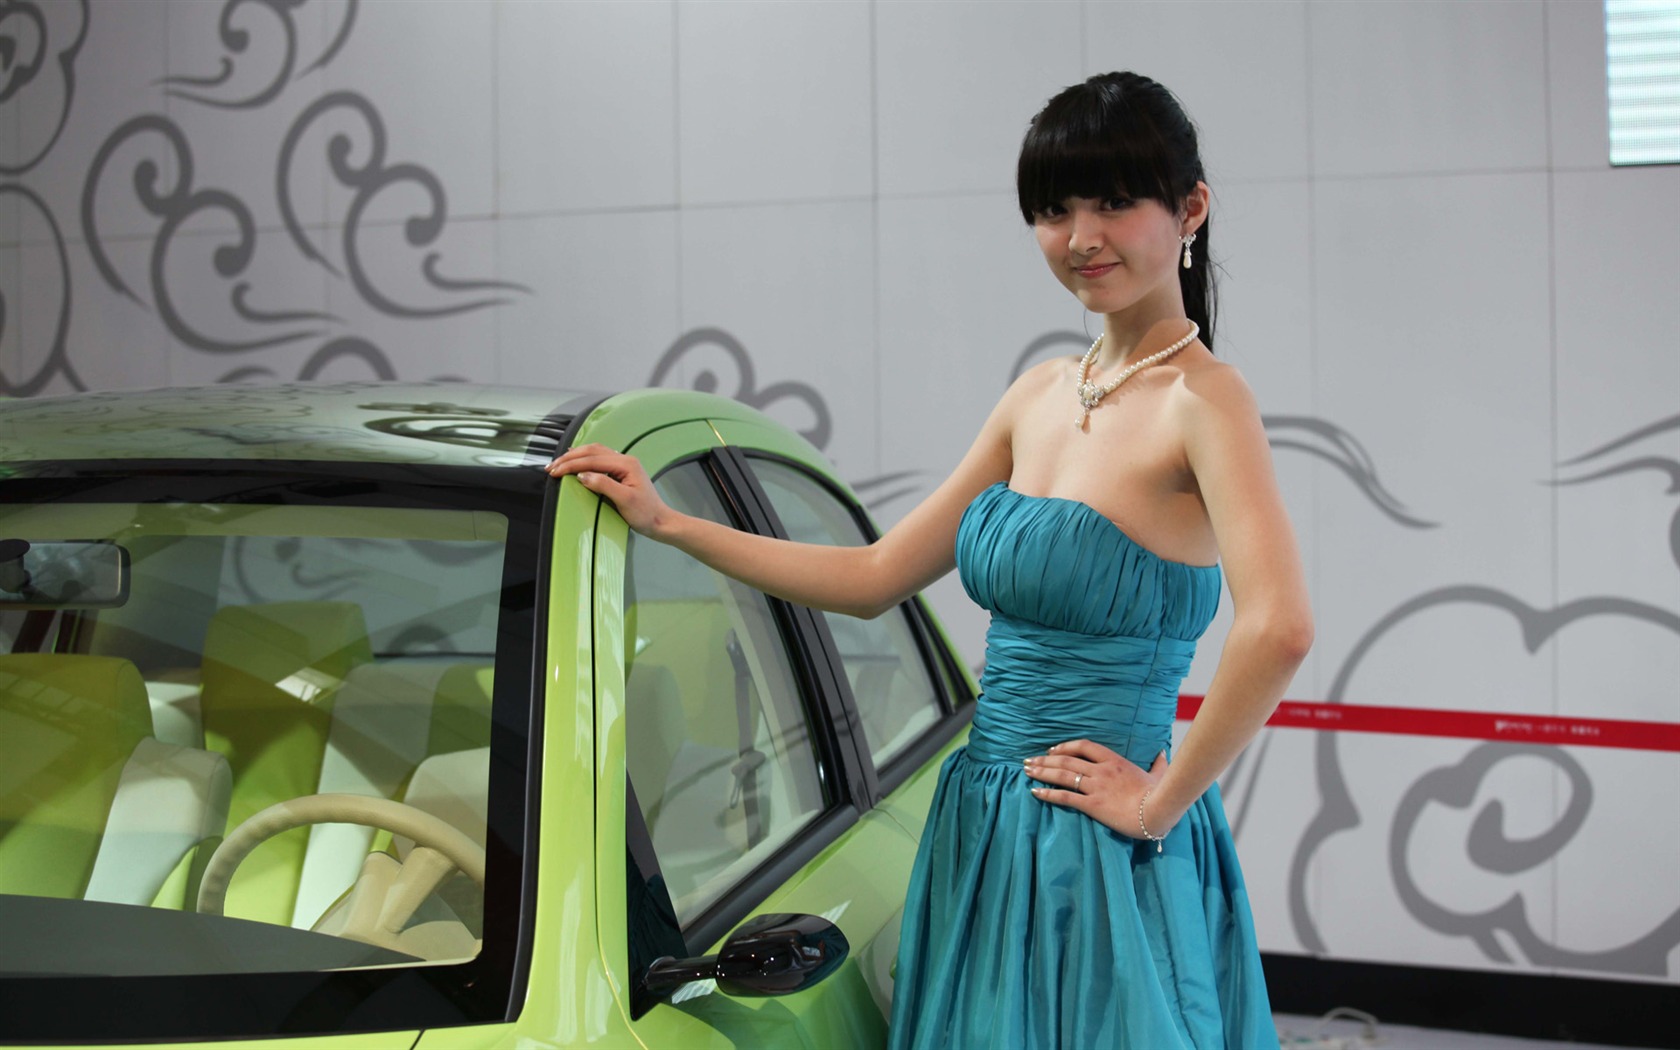 2010 v Pekingu Mezinárodním autosalonu krása (1) (vítr honí mraky práce) #34 - 1680x1050